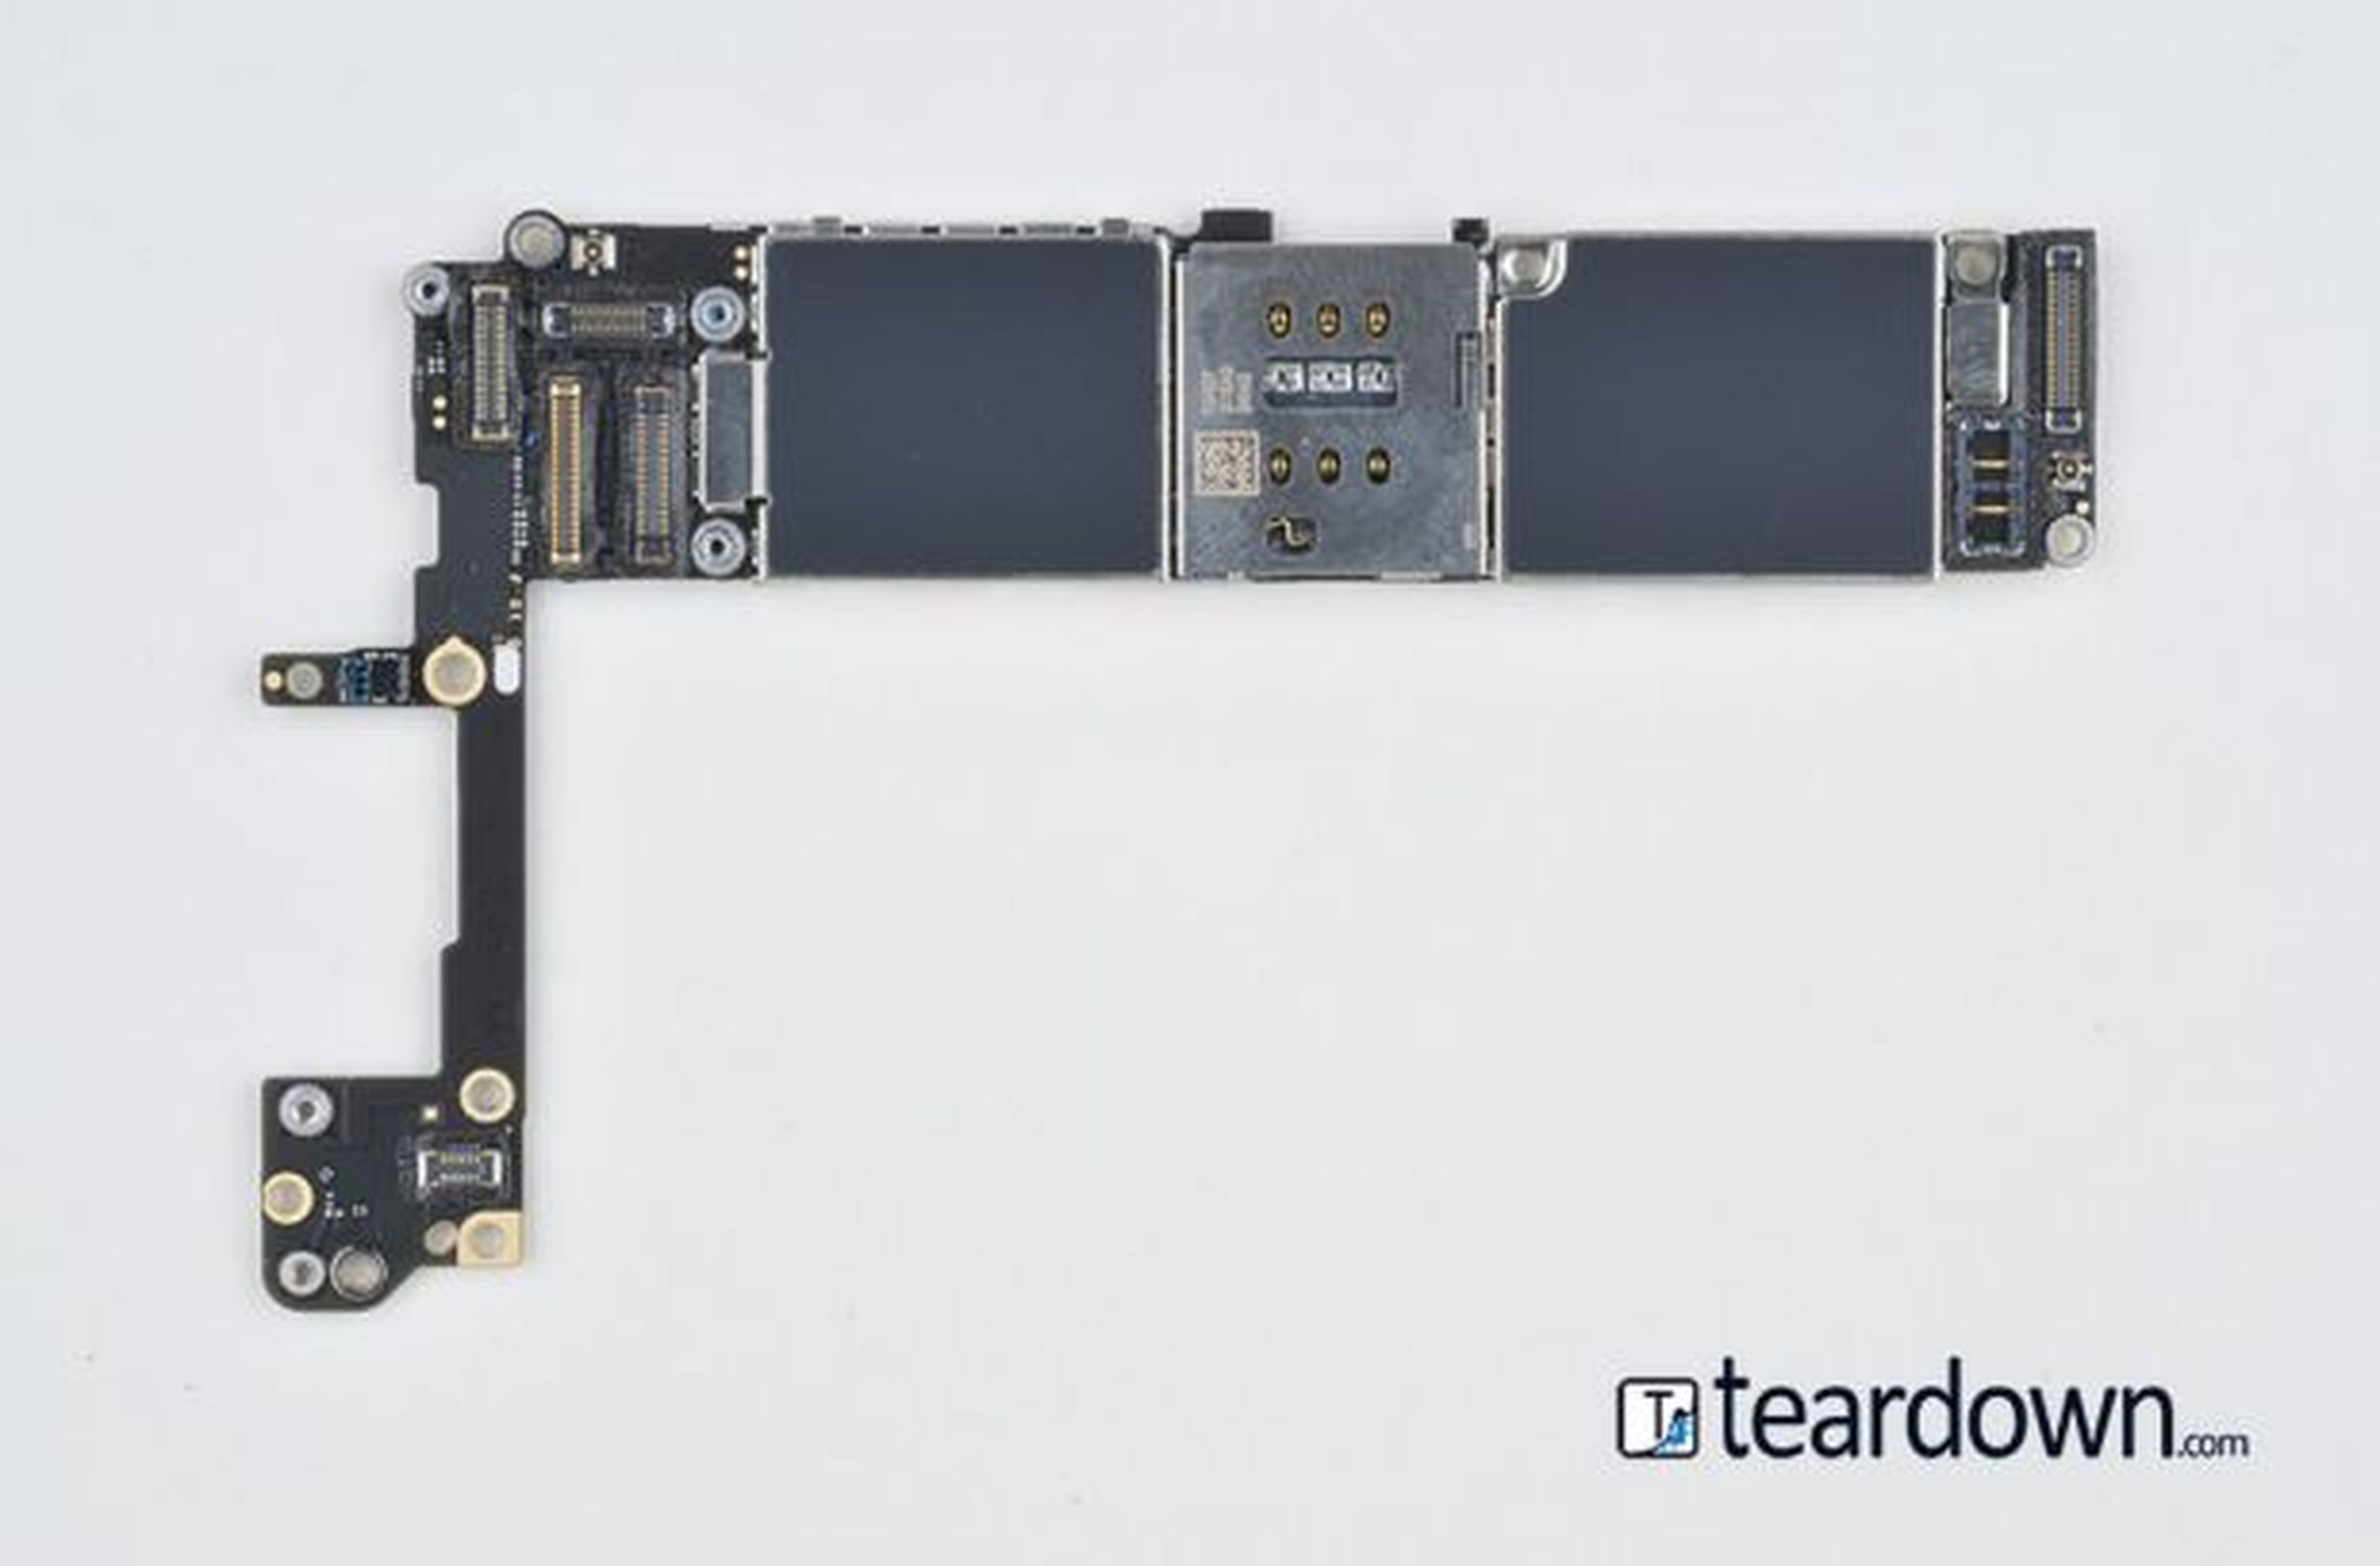 Autopsia de un iPhone 6S: Todas sus piezas y componentes